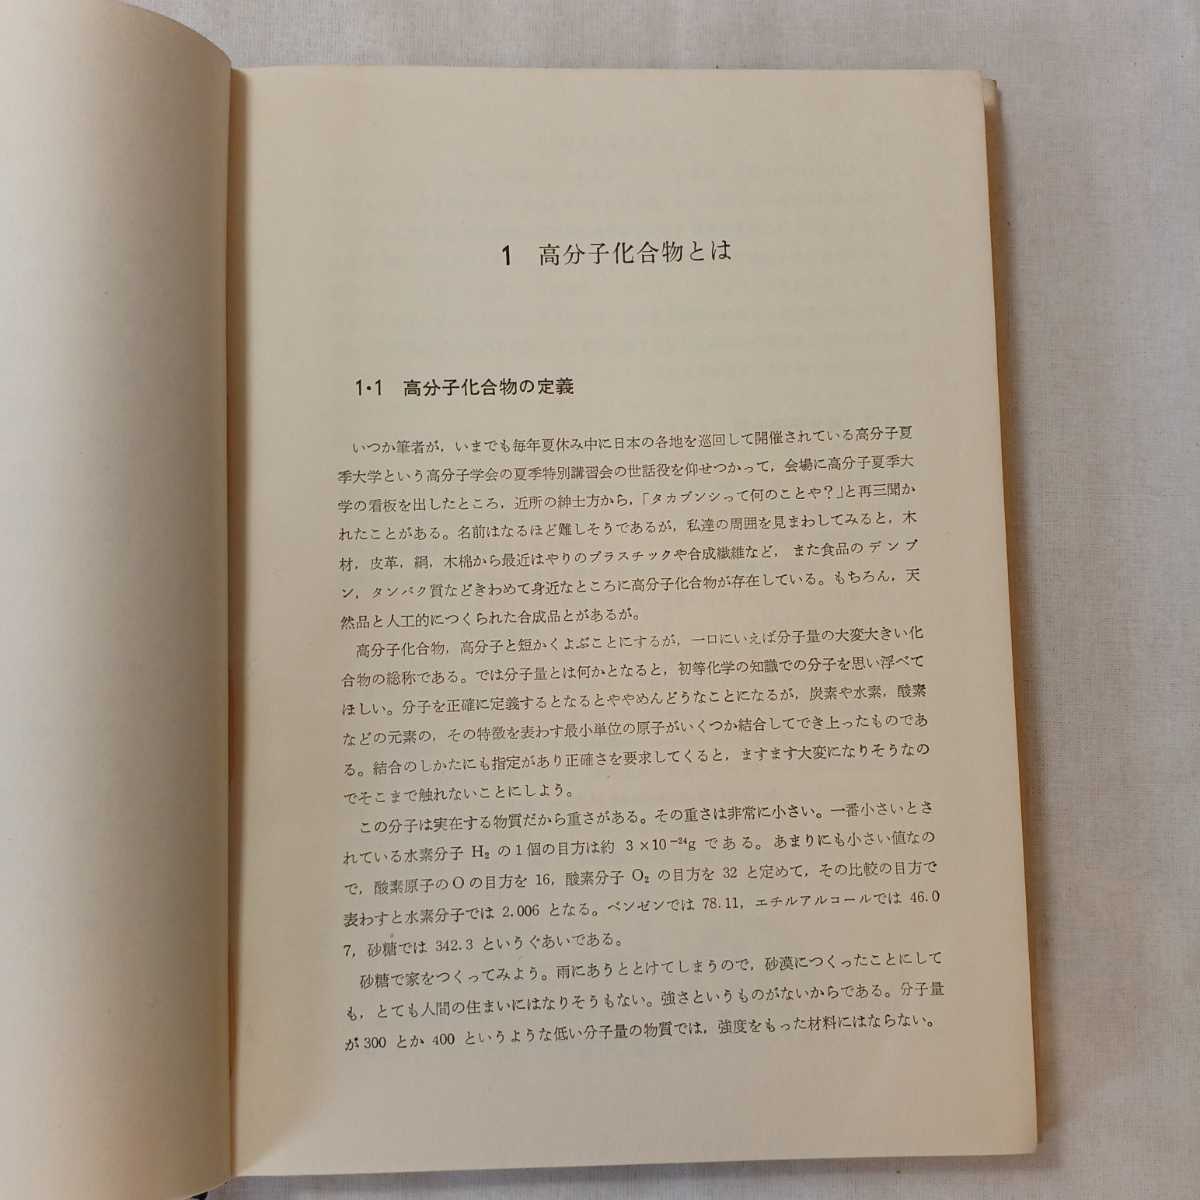 zaa-365♪基礎高分子化学、垣内 弘 (著)、昭晃堂(1968年)